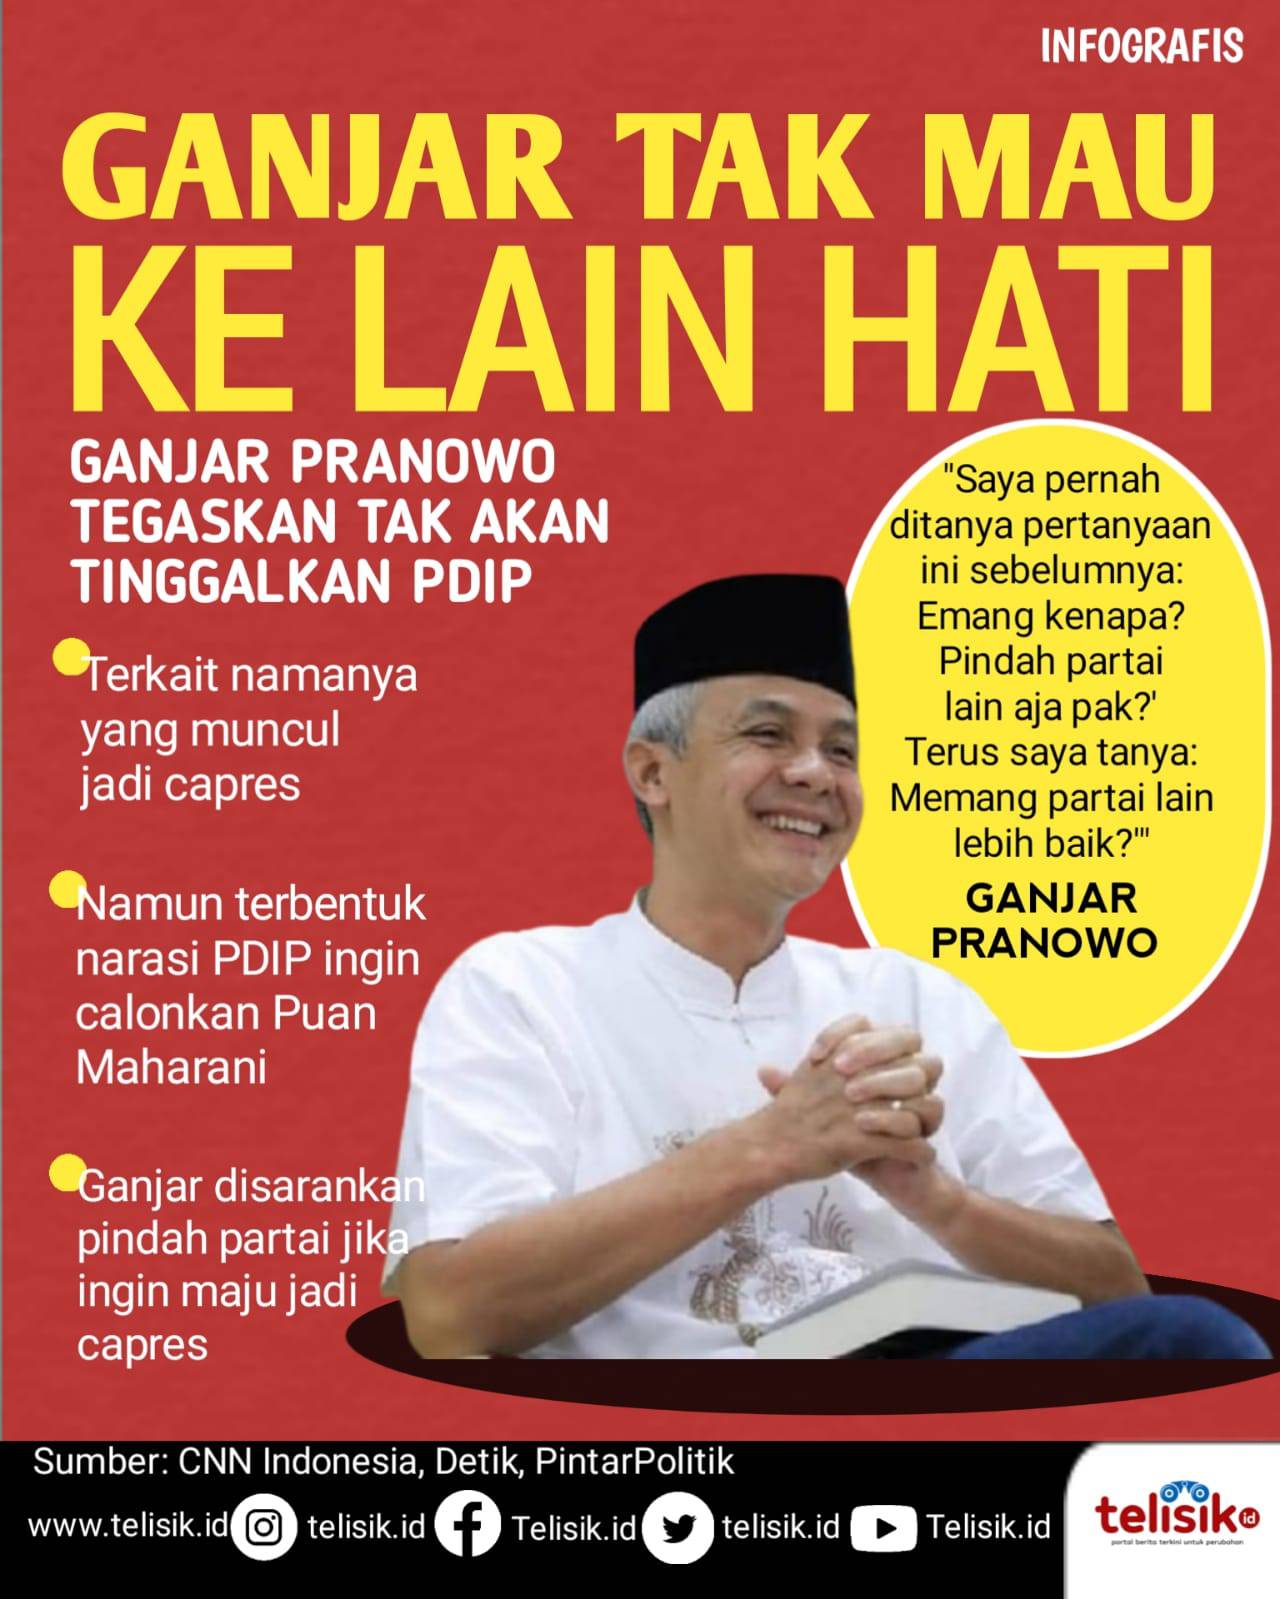 Infografis: Ganjar Pranawo Tegaskan Tak Akan Tinggalkan PDIP